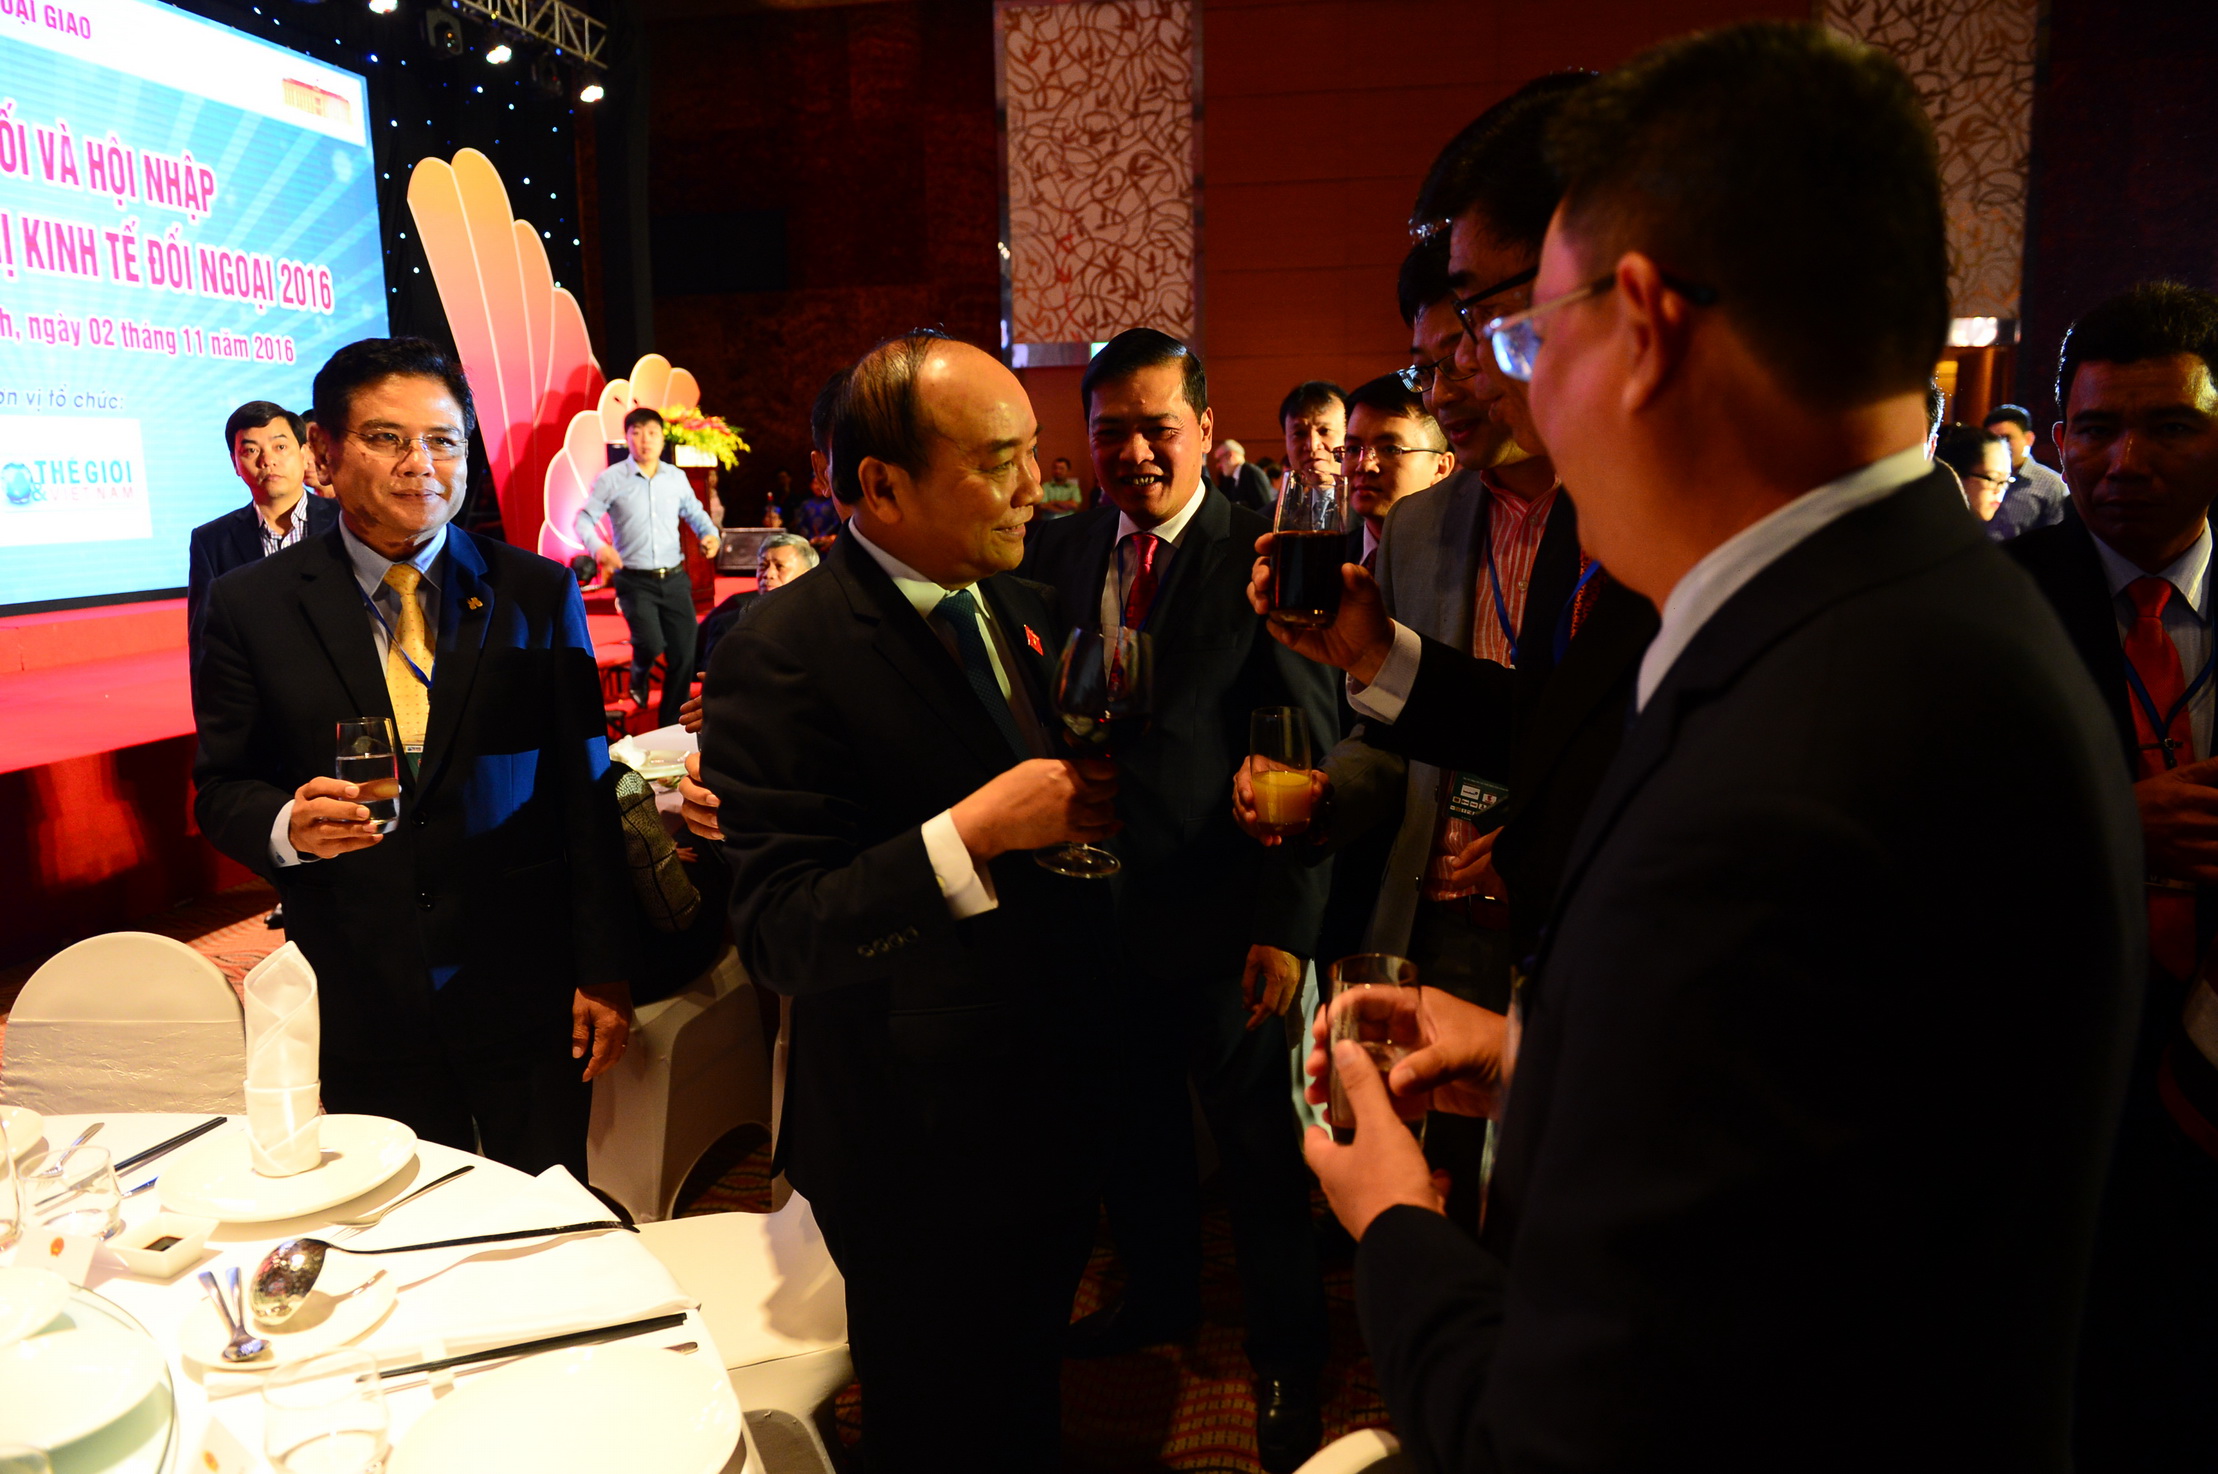 Thủ tướng Nguyễn Xuân Phúc các doanh nghiệp tại gala kết nối và hội nhập chào mừng hội nghị kinh tế đối ngoại 2016 tối 2-11 - Ảnh: Quang Định